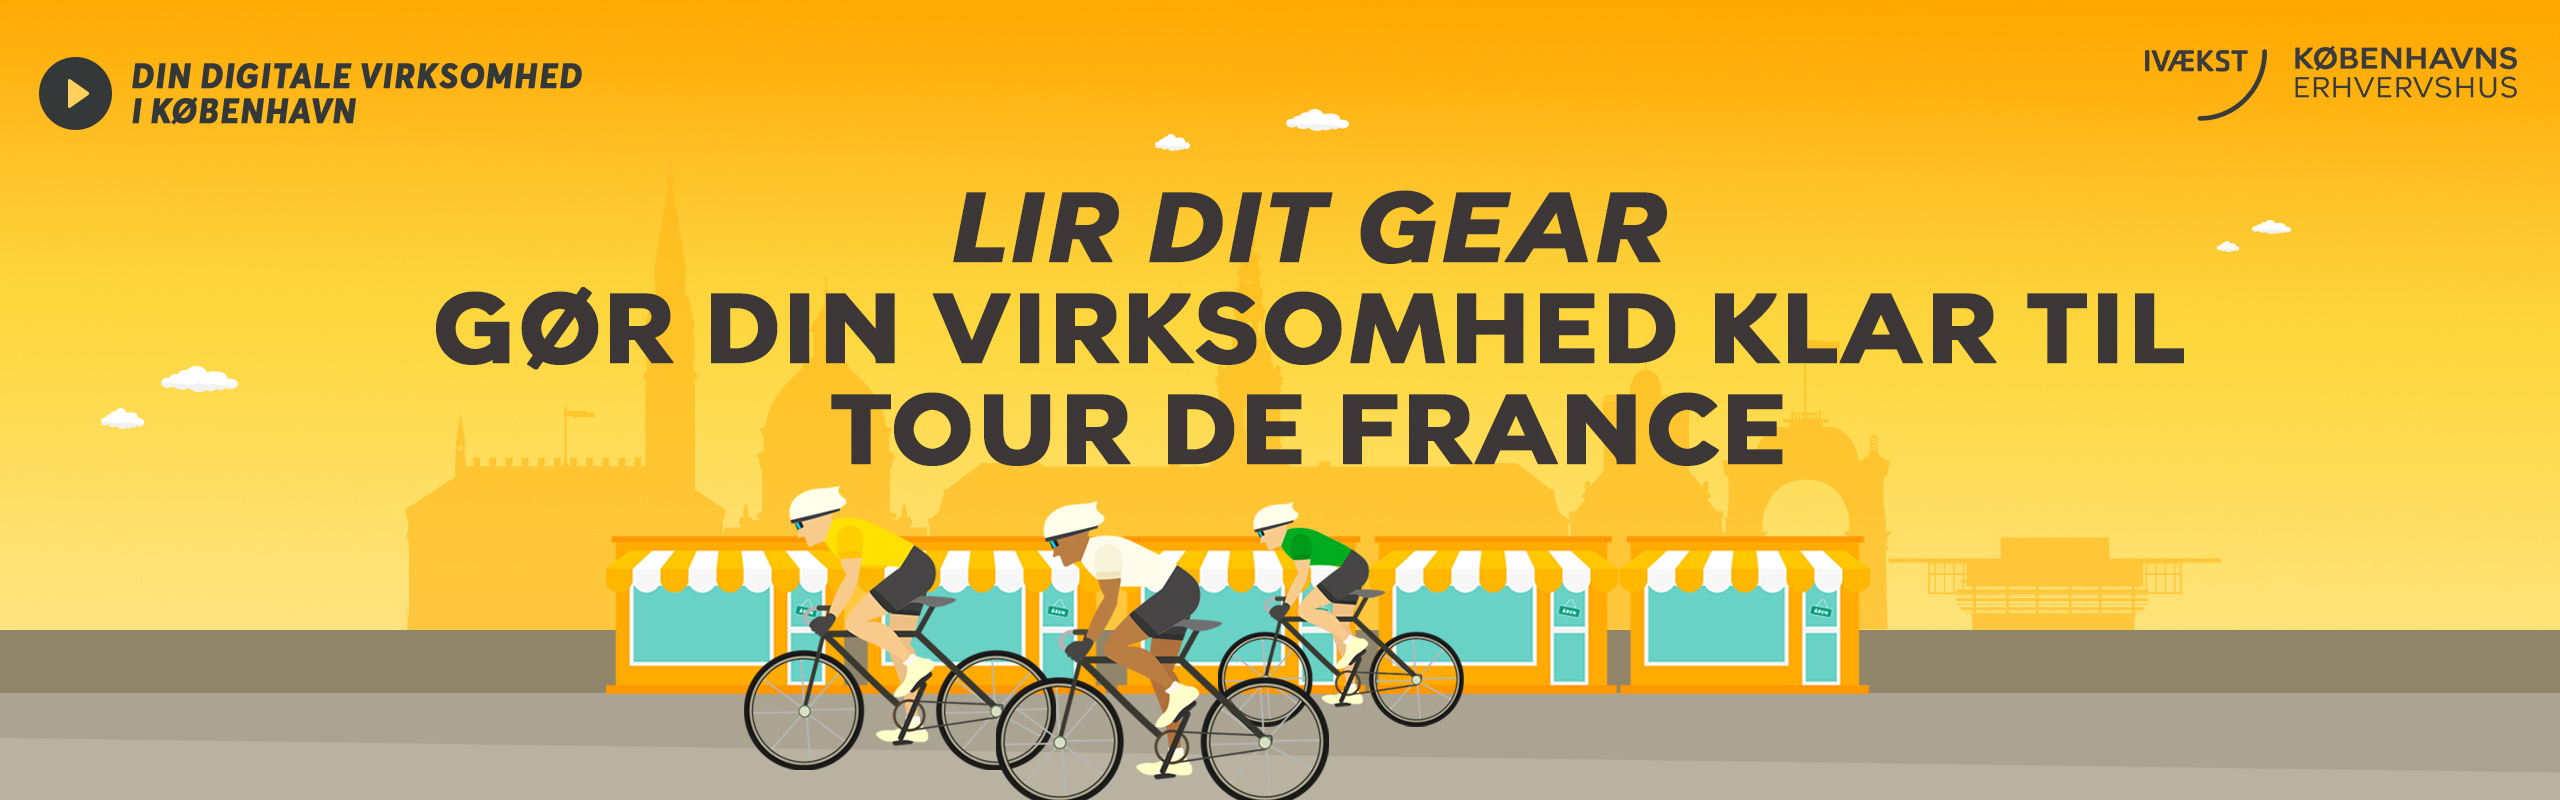 Lir dit gear - gør din virksomhed klar til Tour de France!